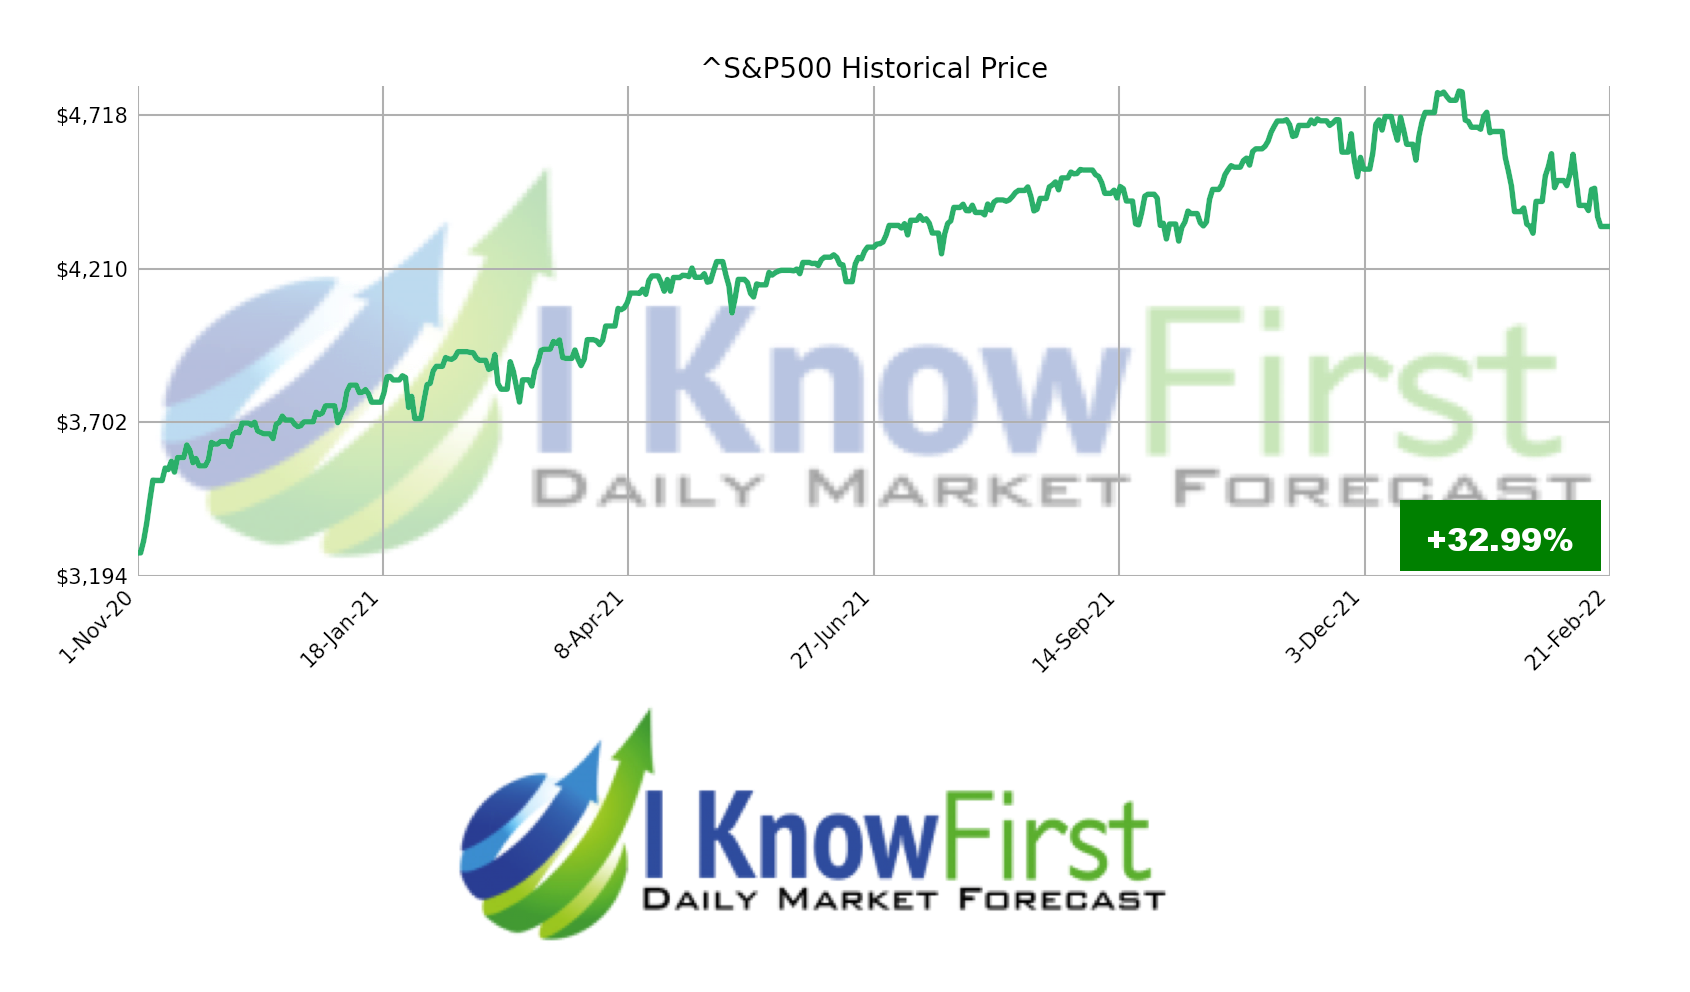 stock market forecast S&P500